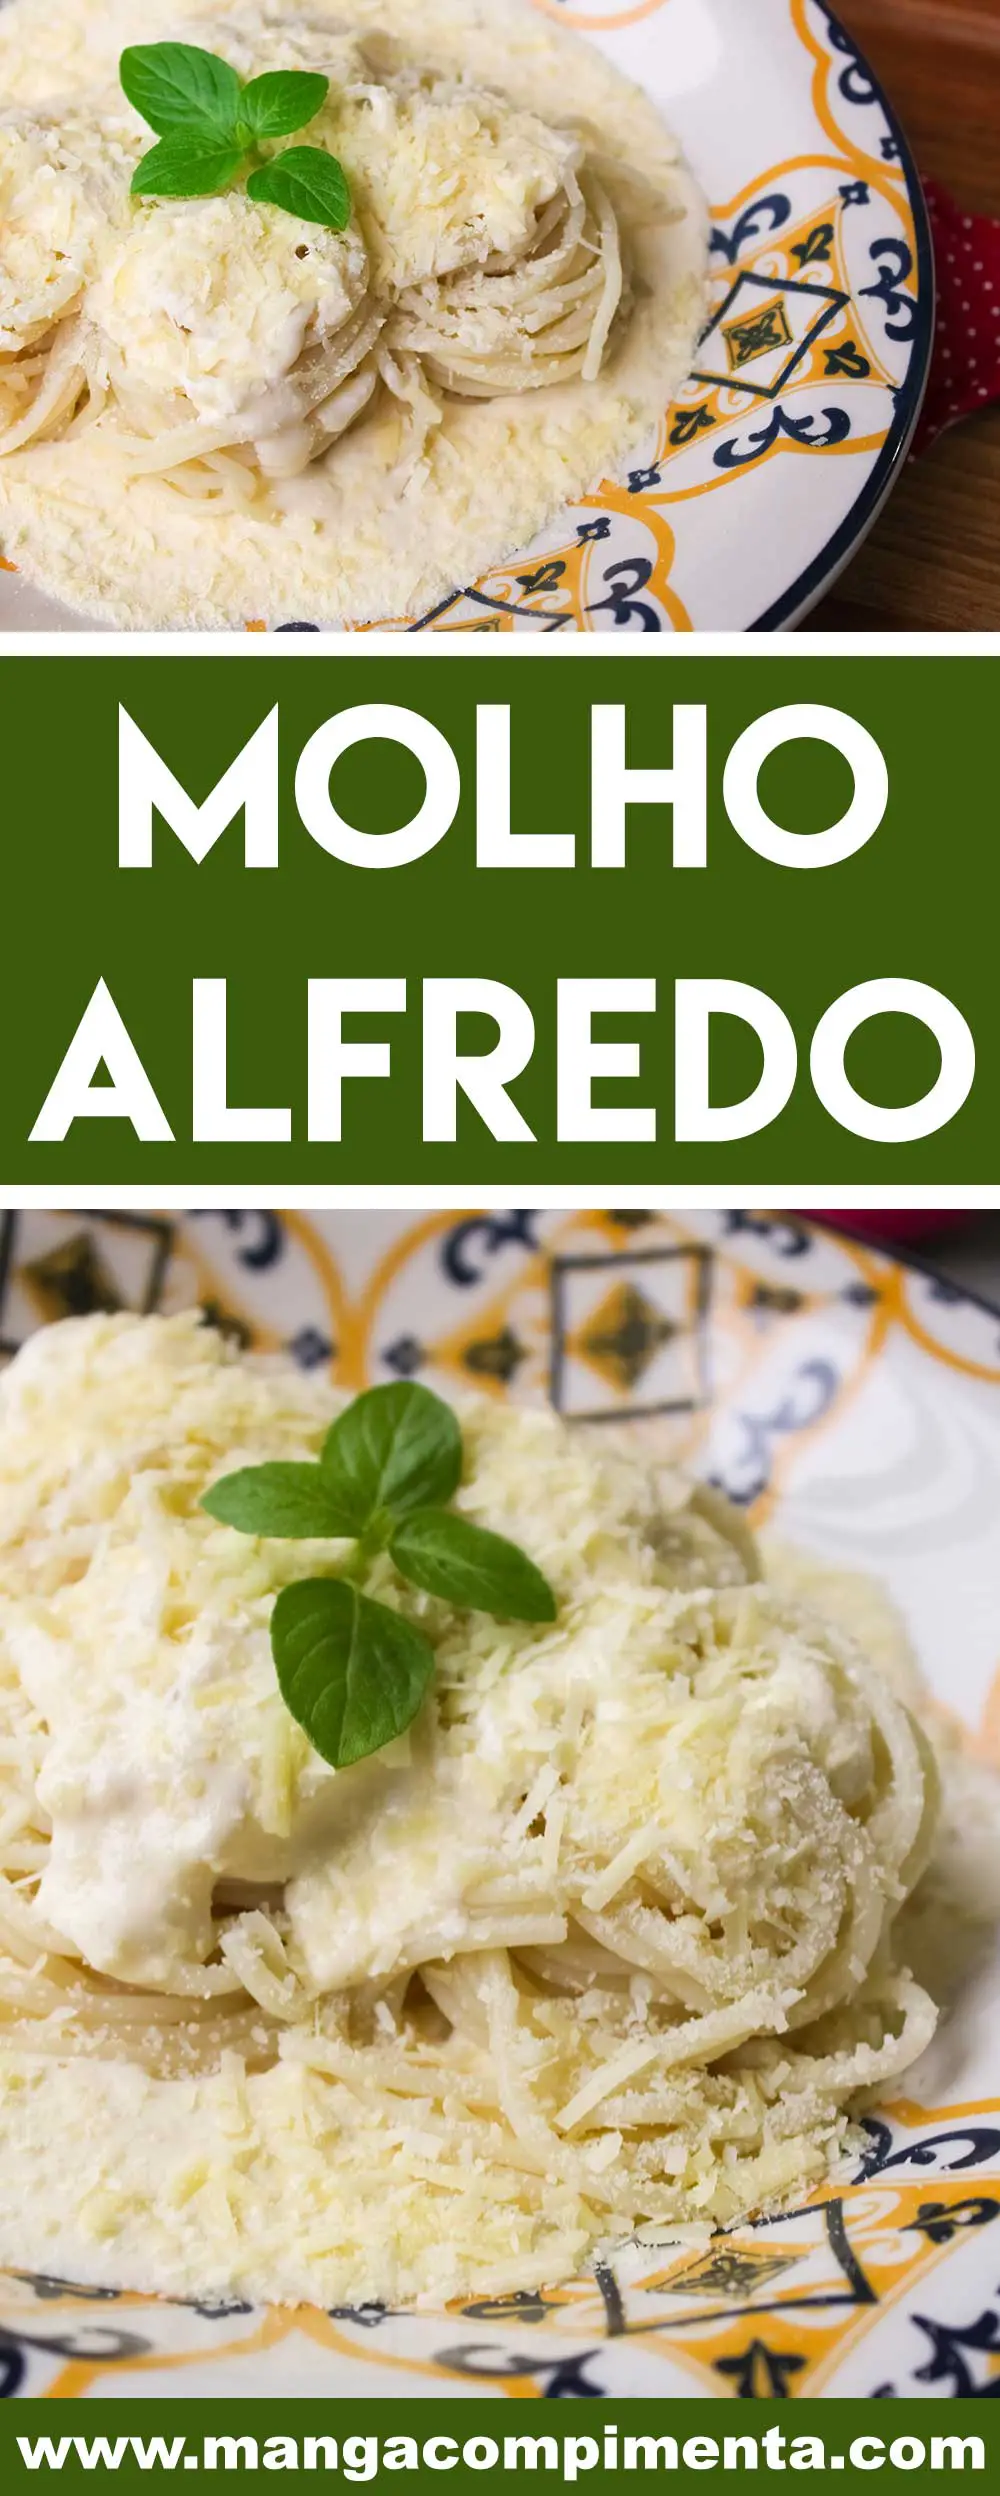 Receita de Molho Alfredo para Massas - prepare um prato italiano delicioso para alguém especial.